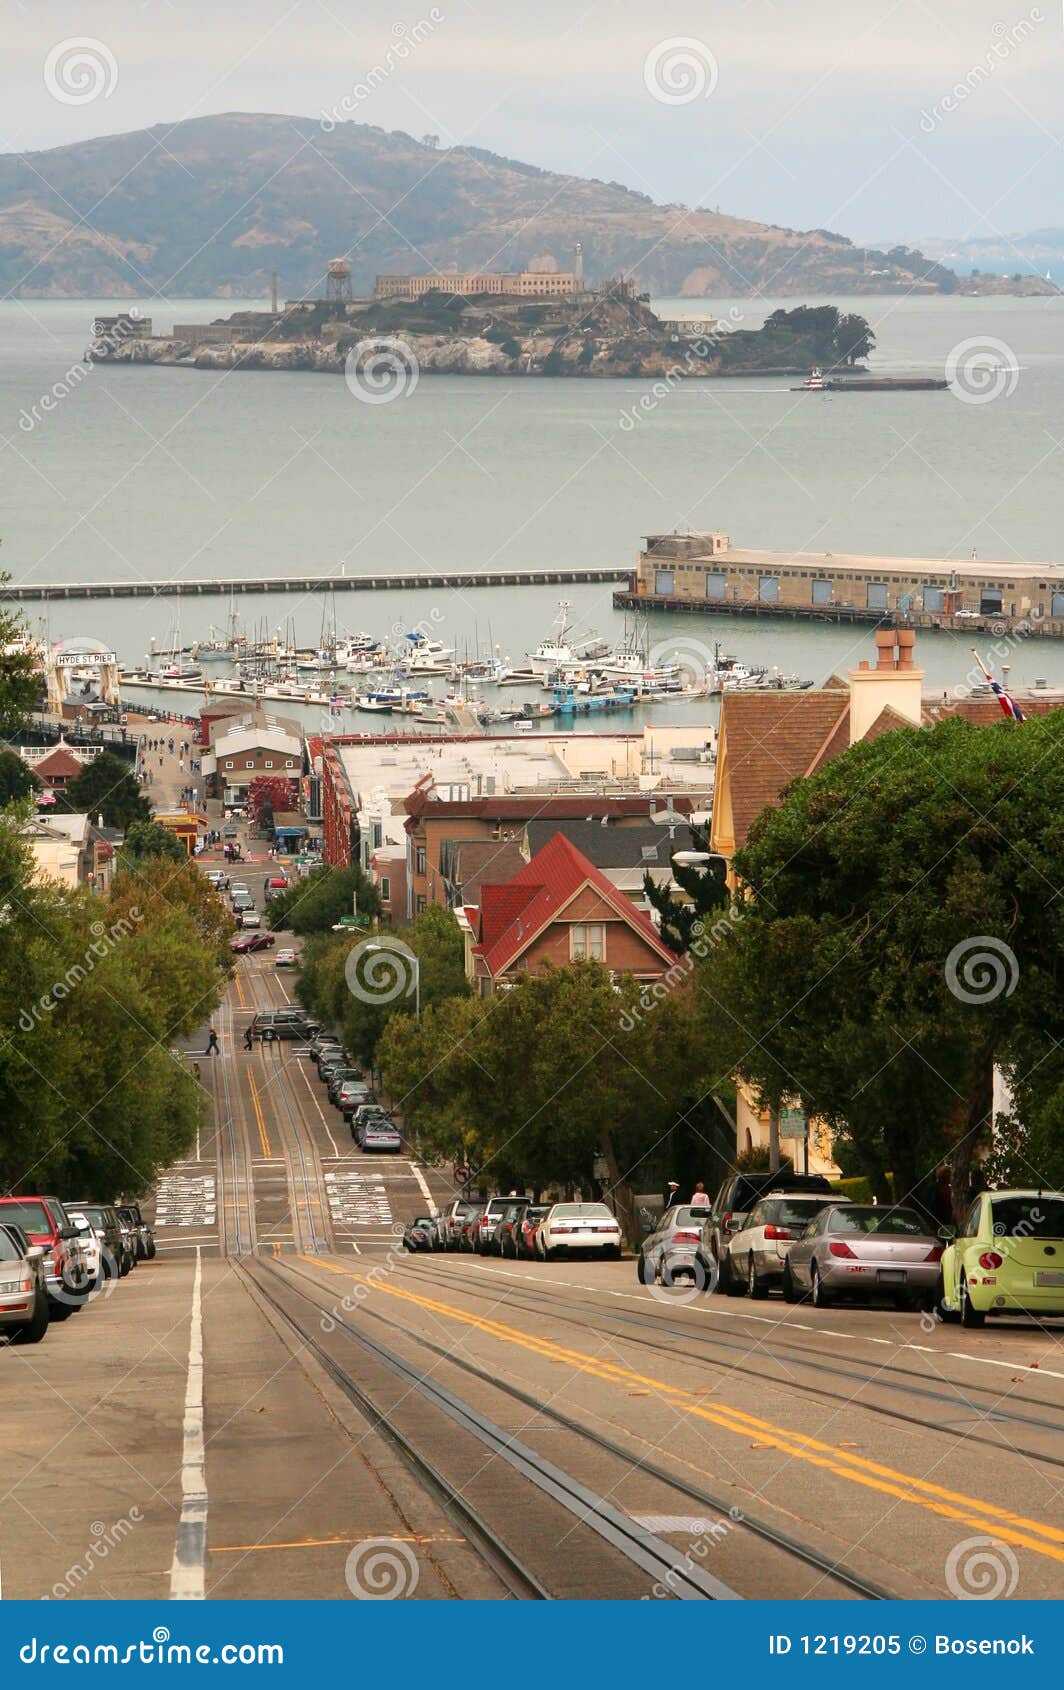 Francisco-Straßenszene. Francisco-Straße, die zum Schacht mit Alcatraz Insel auf dem Hintergrund absteigt